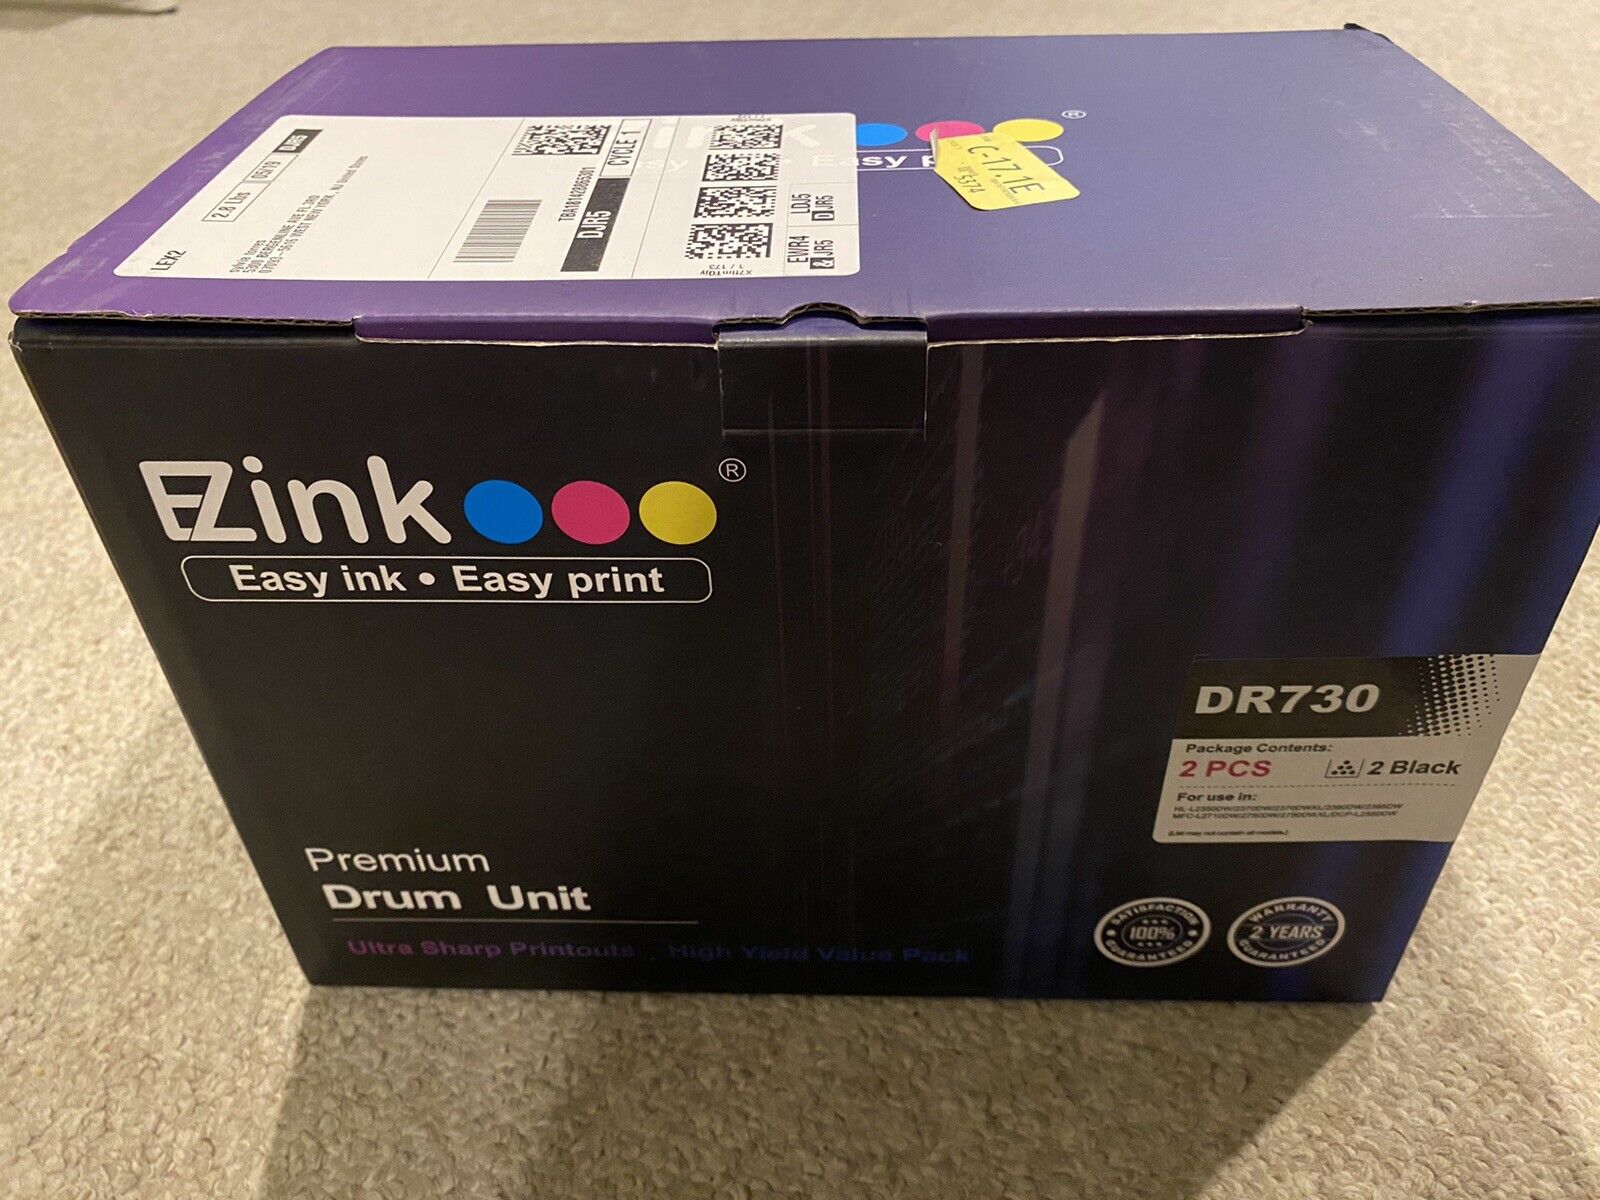 EZink 2pc Black Premium Drum Unit - DR730